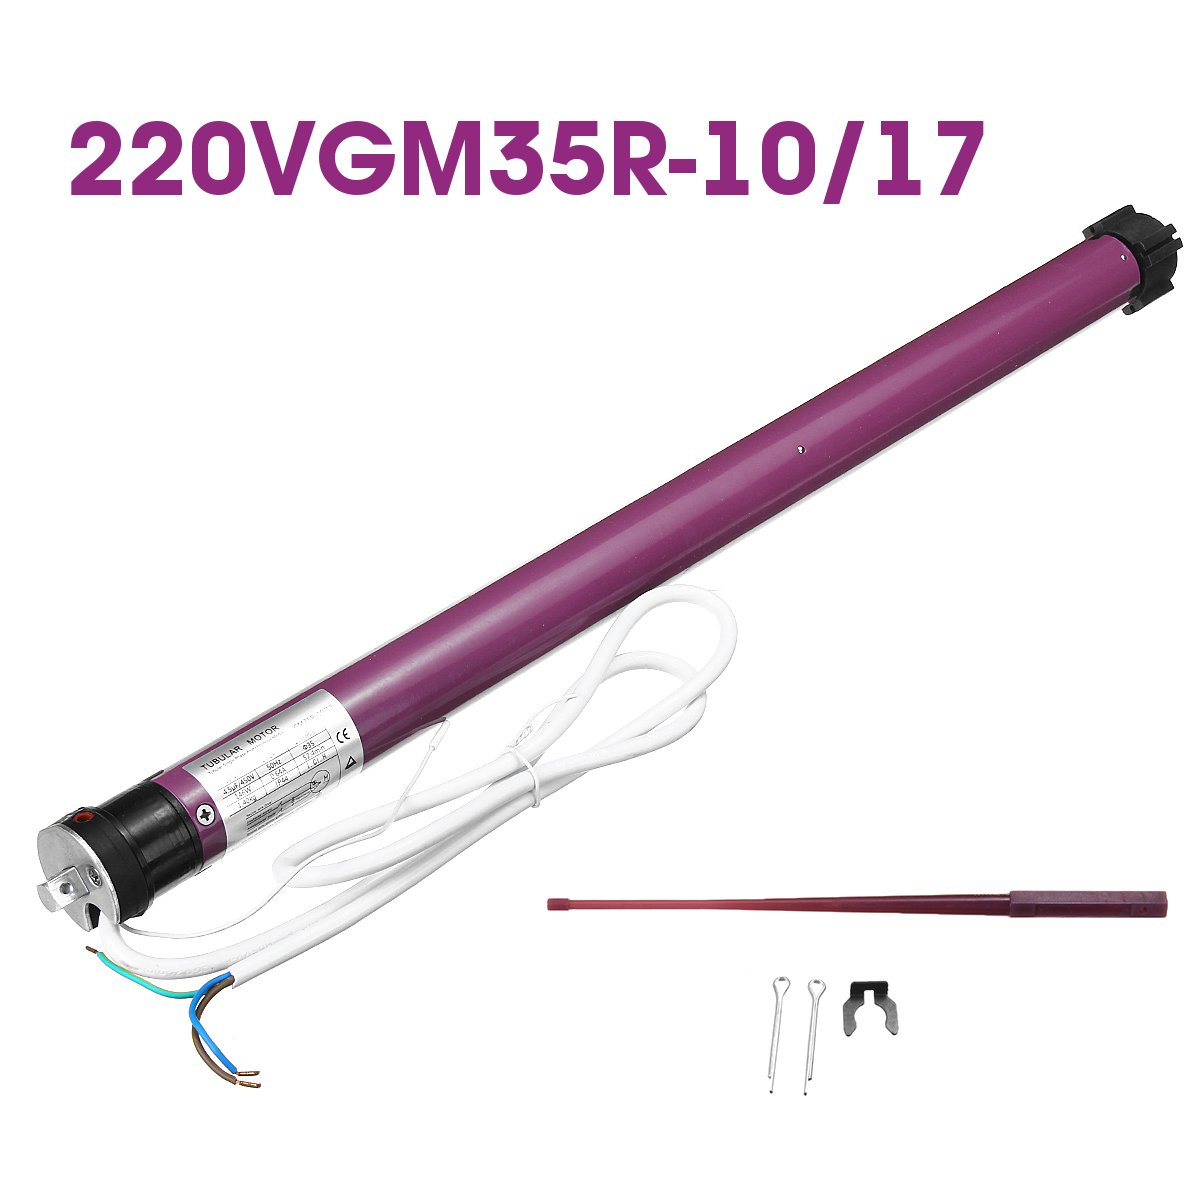 110V240V-Electric-Roller-Shade-Motor-Remote-Control-Blind-Shade-Tubular-Motor-Kit-1561708-4